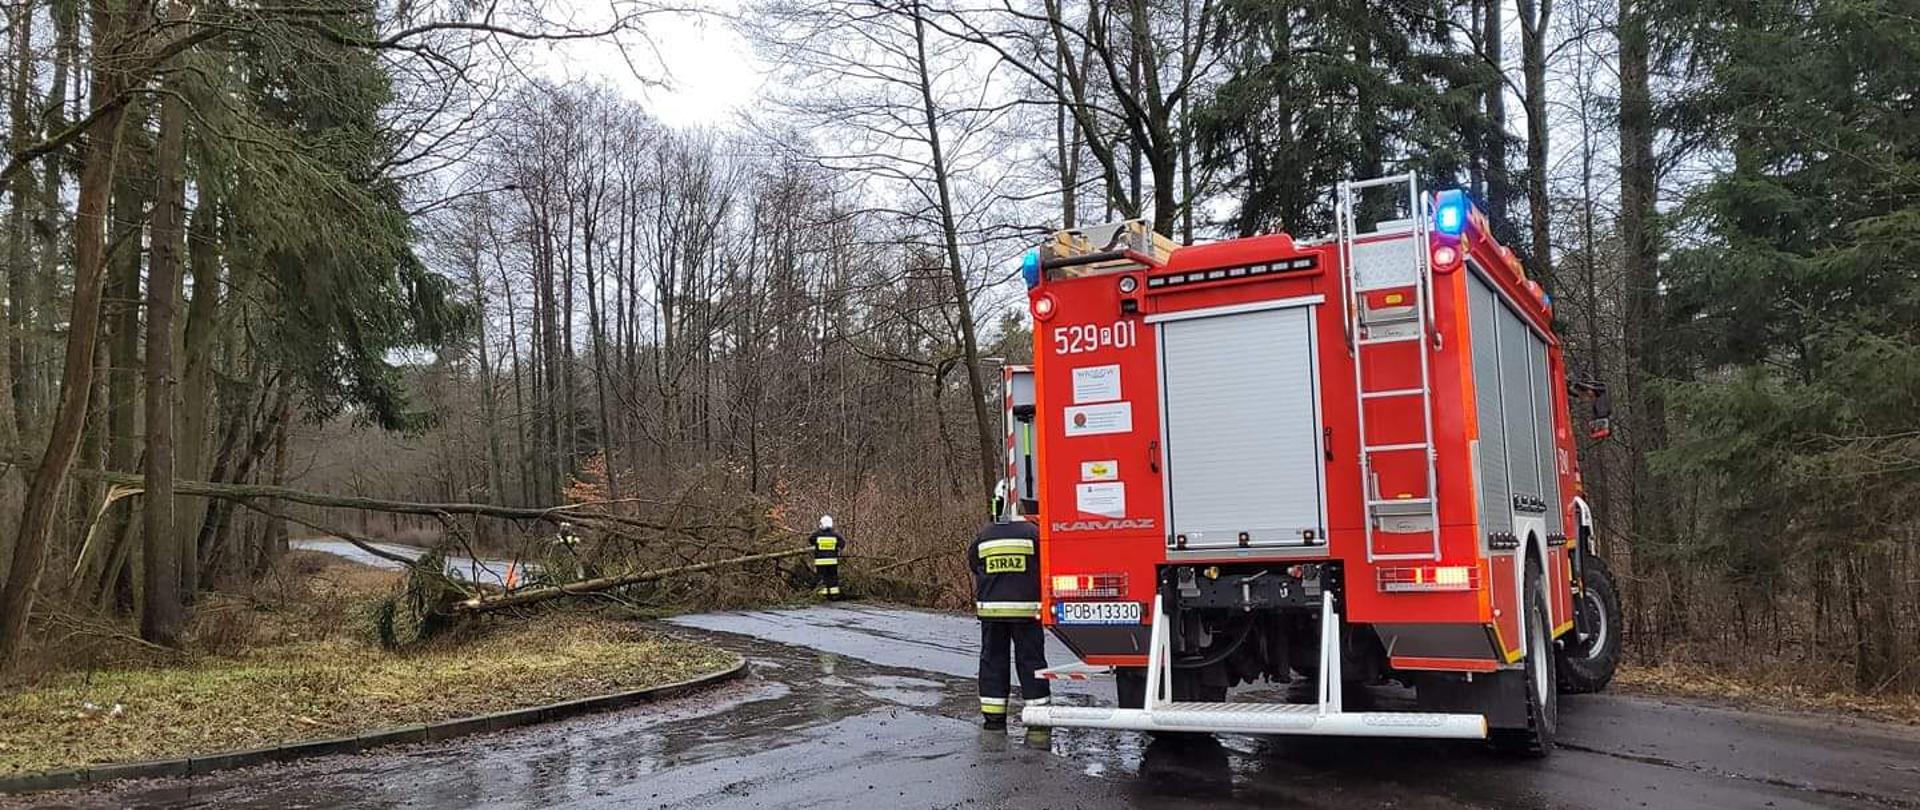 Zdjęcie przedstawia powalone na drogę drzewa oraz samochód pożarniczy i strażaka.